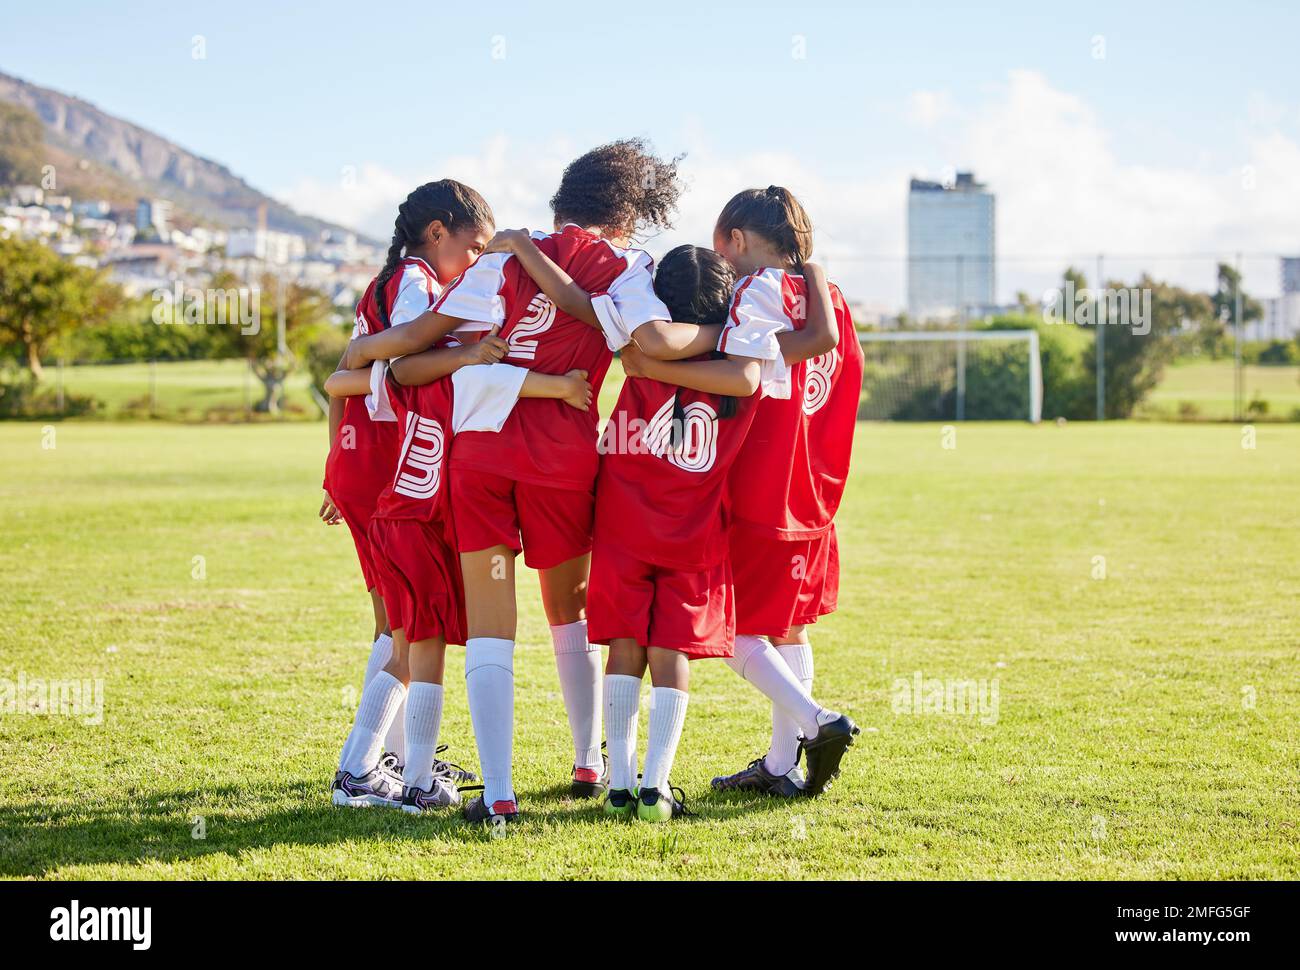 Diversité, sport girl hug et entraînement de terrain de football pour les jeunes de compétition jouant à l'herbe de stade. L'équipe, le jeune athlète ou le joueur aiment Banque D'Images